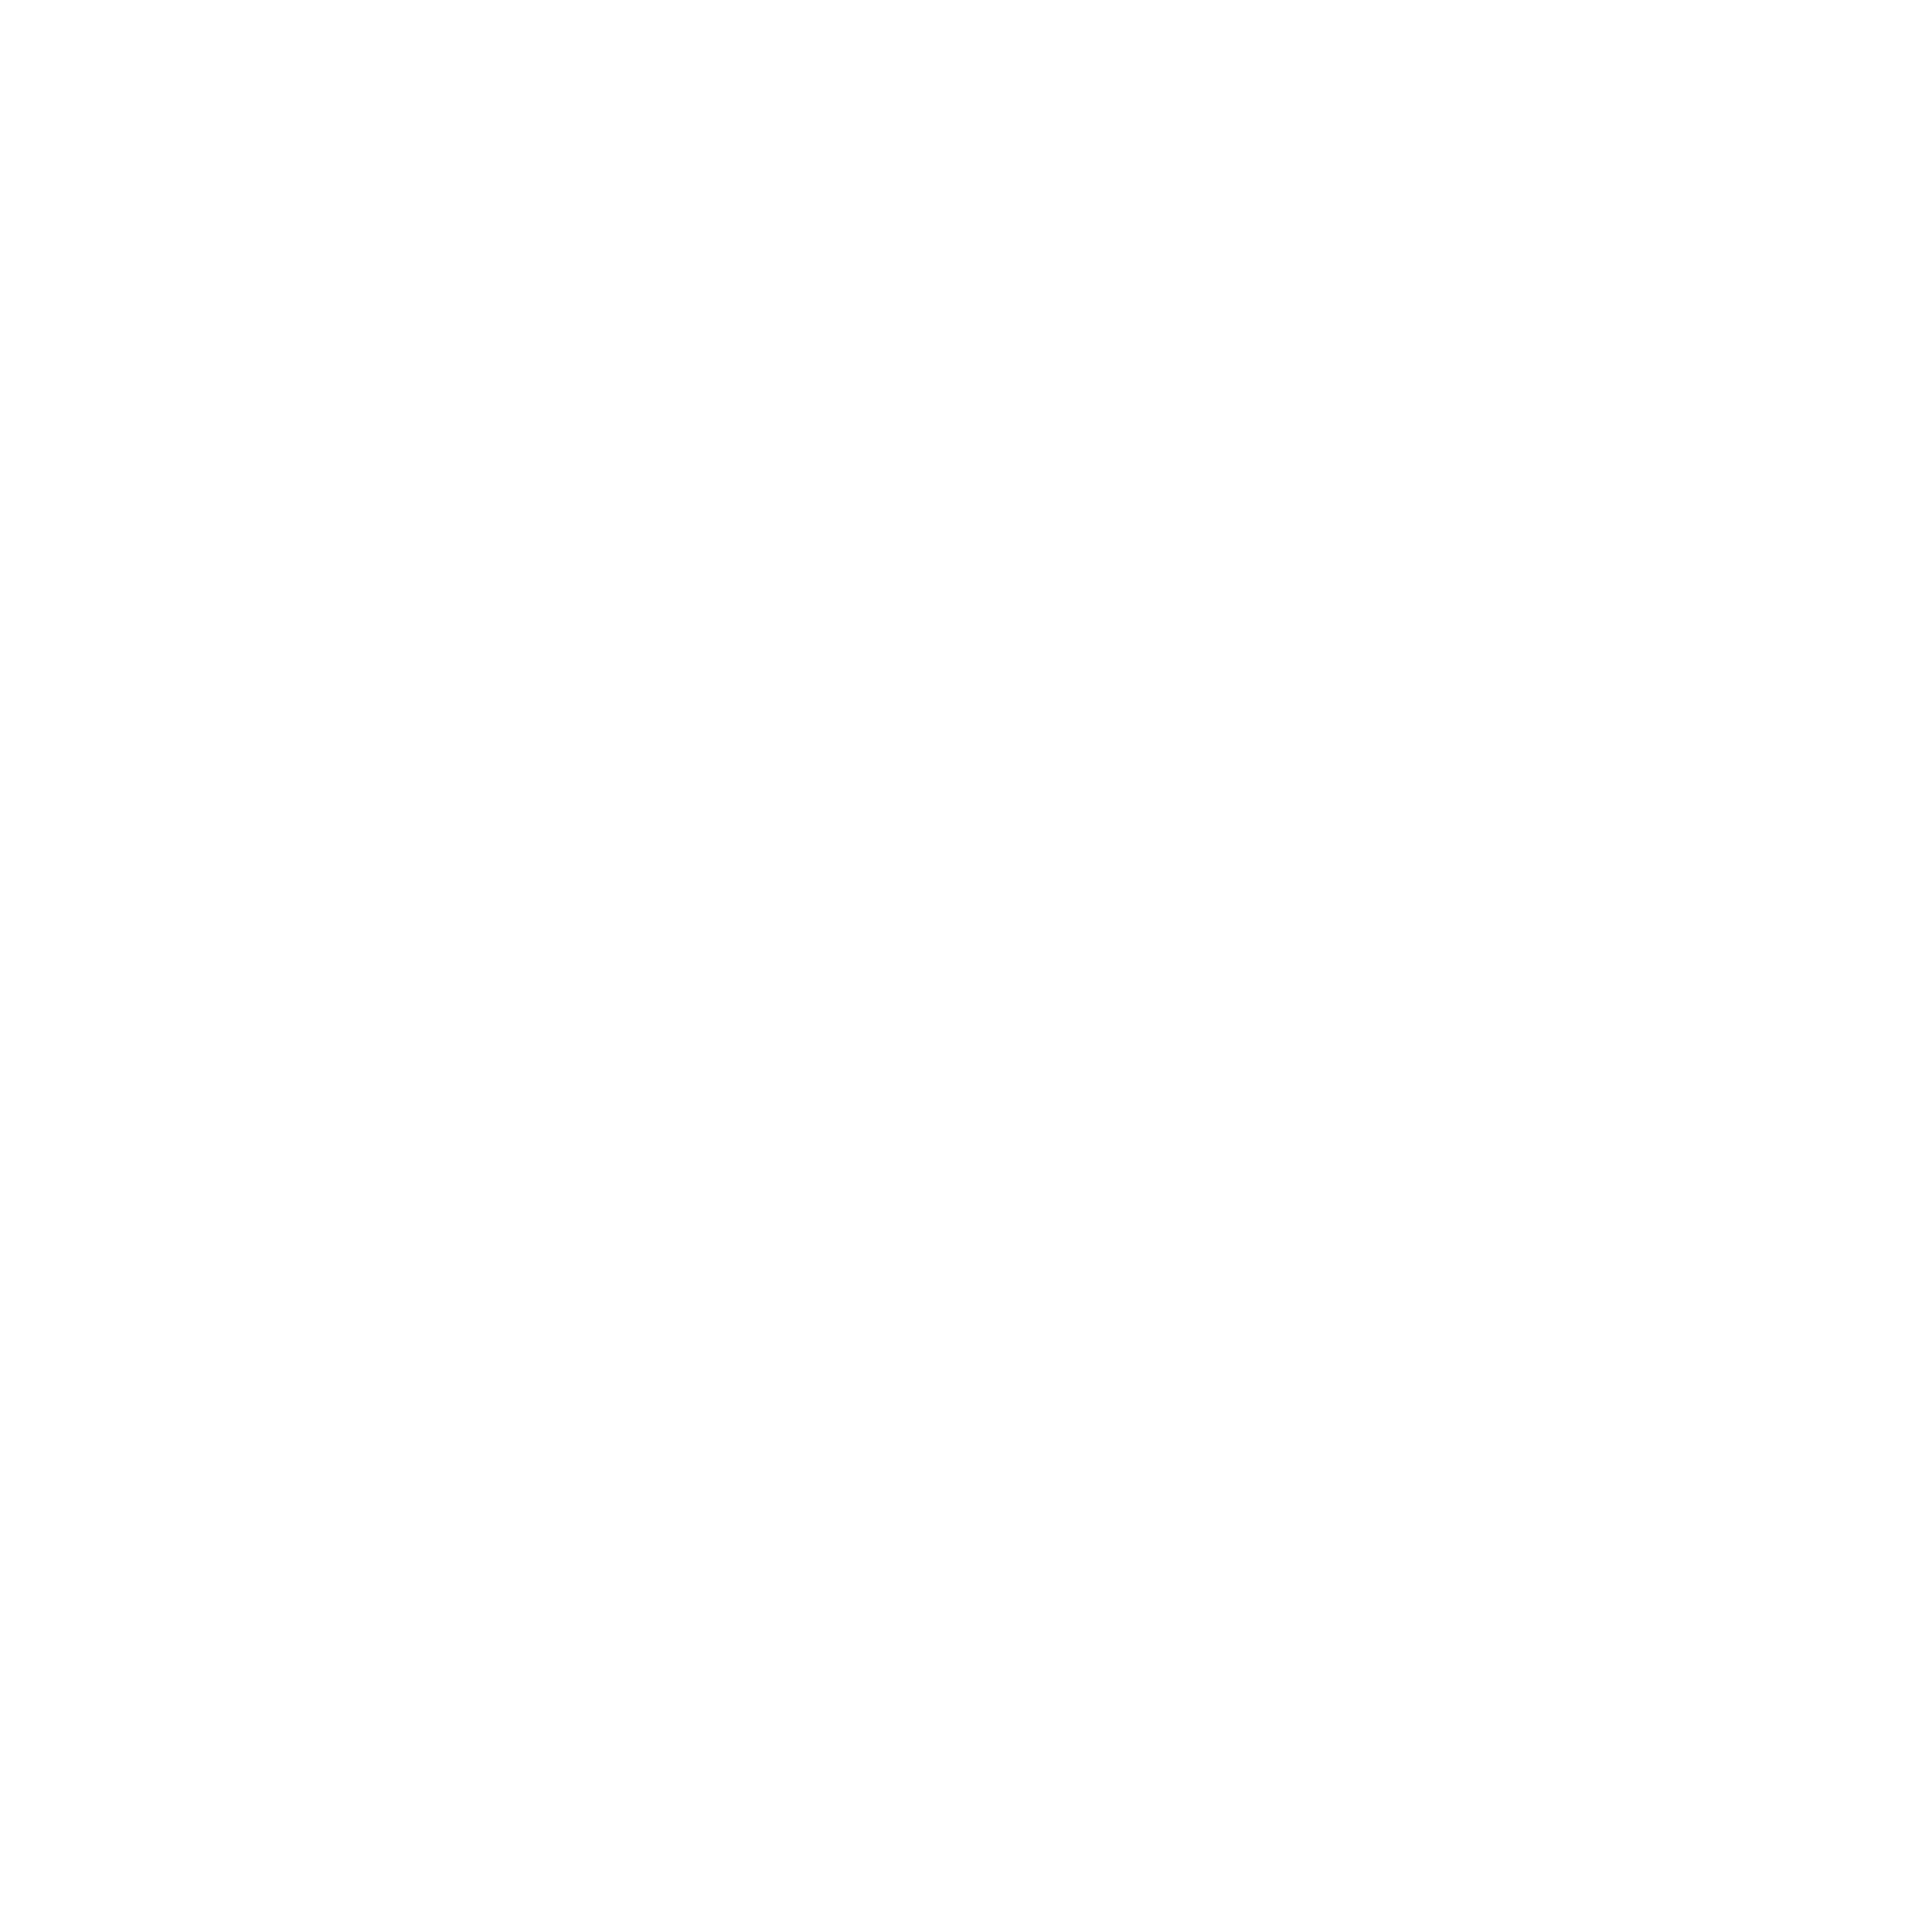 June Rendell Academy of Dance